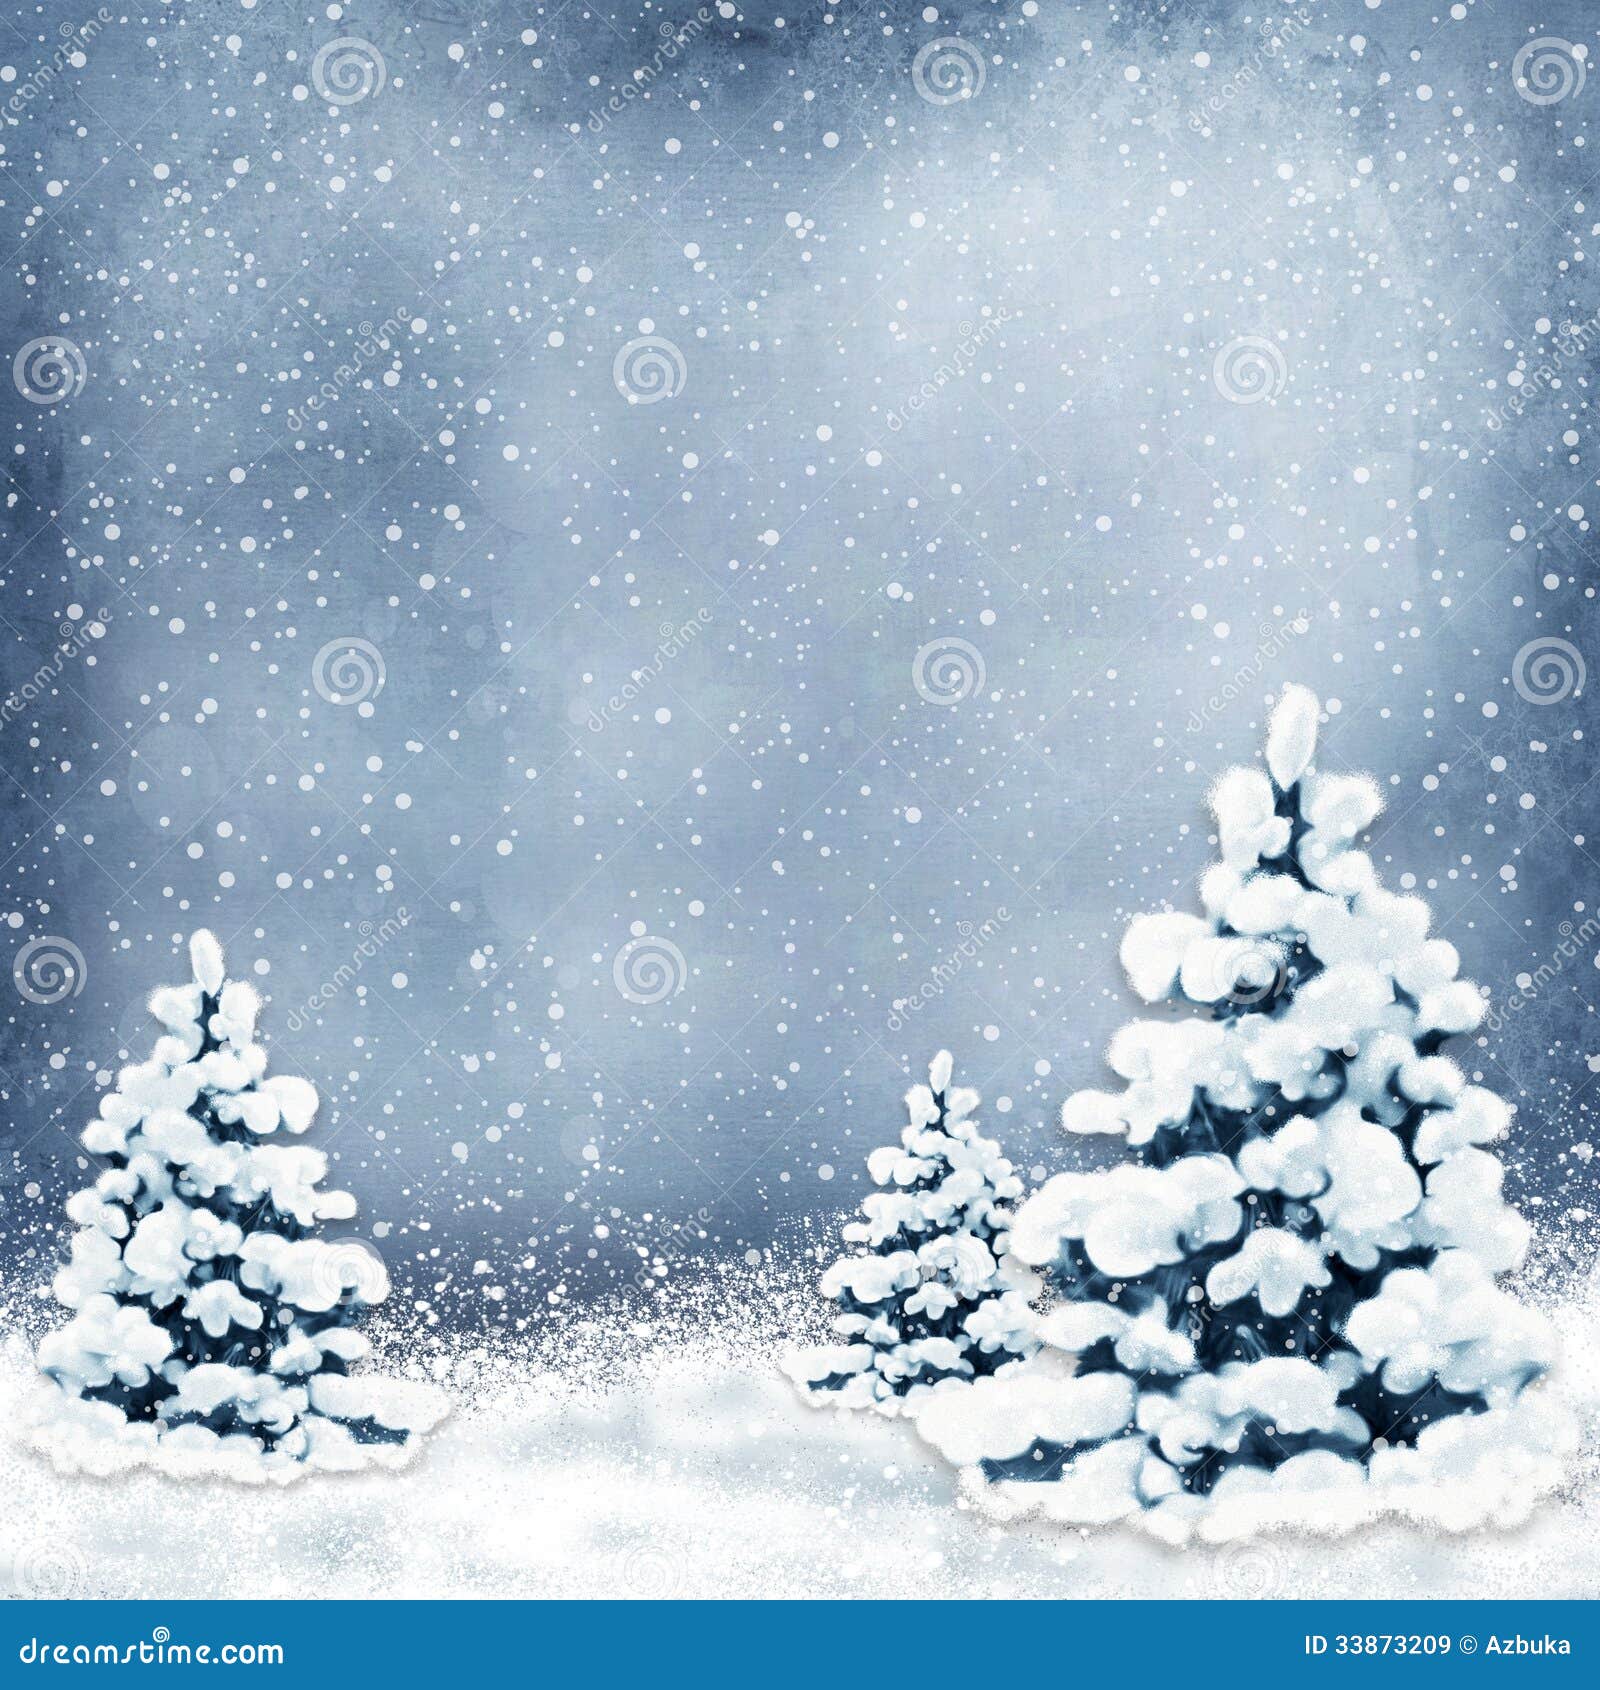 Cây thông Noel và tuyết trắng – hai yếu tố giúp tạo nên một hình nền đông đầy lãng mạn. Chẳng có gì tuyệt vời hơn khi trang trí màn hình của bạn với những chiếc cành thông Noel đầy màu sắc và những bông tuyết lấp lánh.